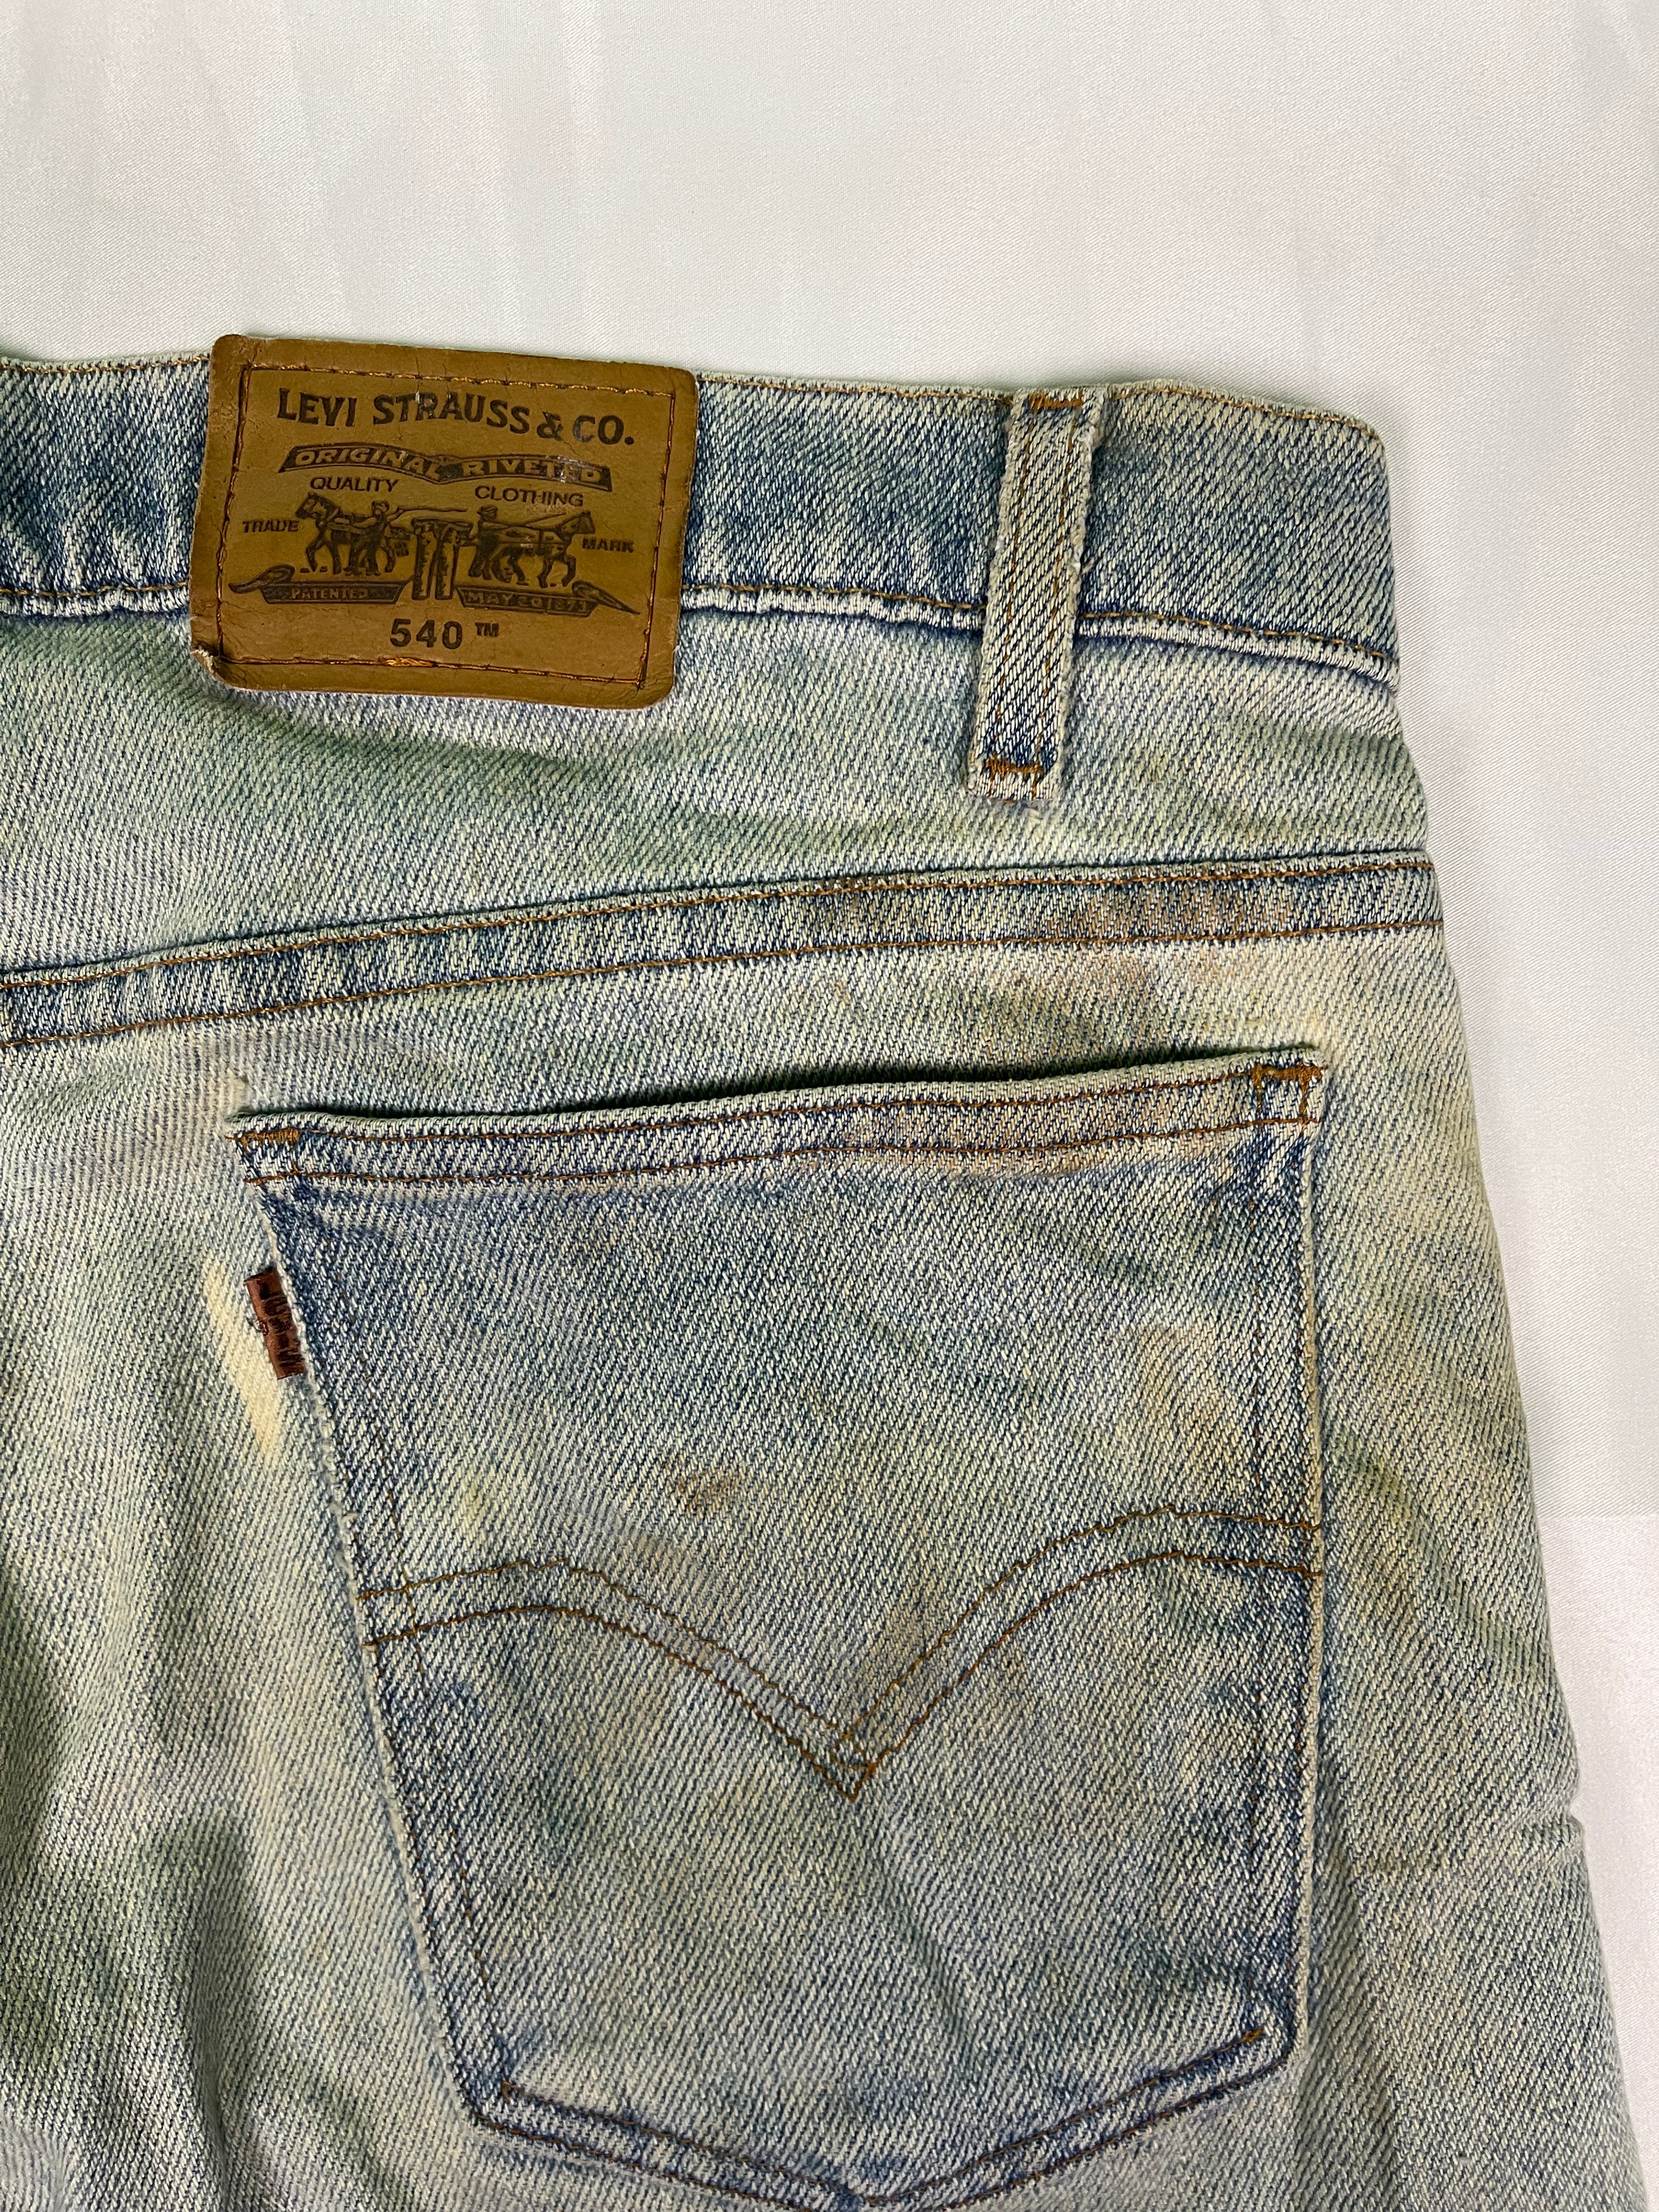 95&#39; Levis 540 Distressed Look Vintage Jeans